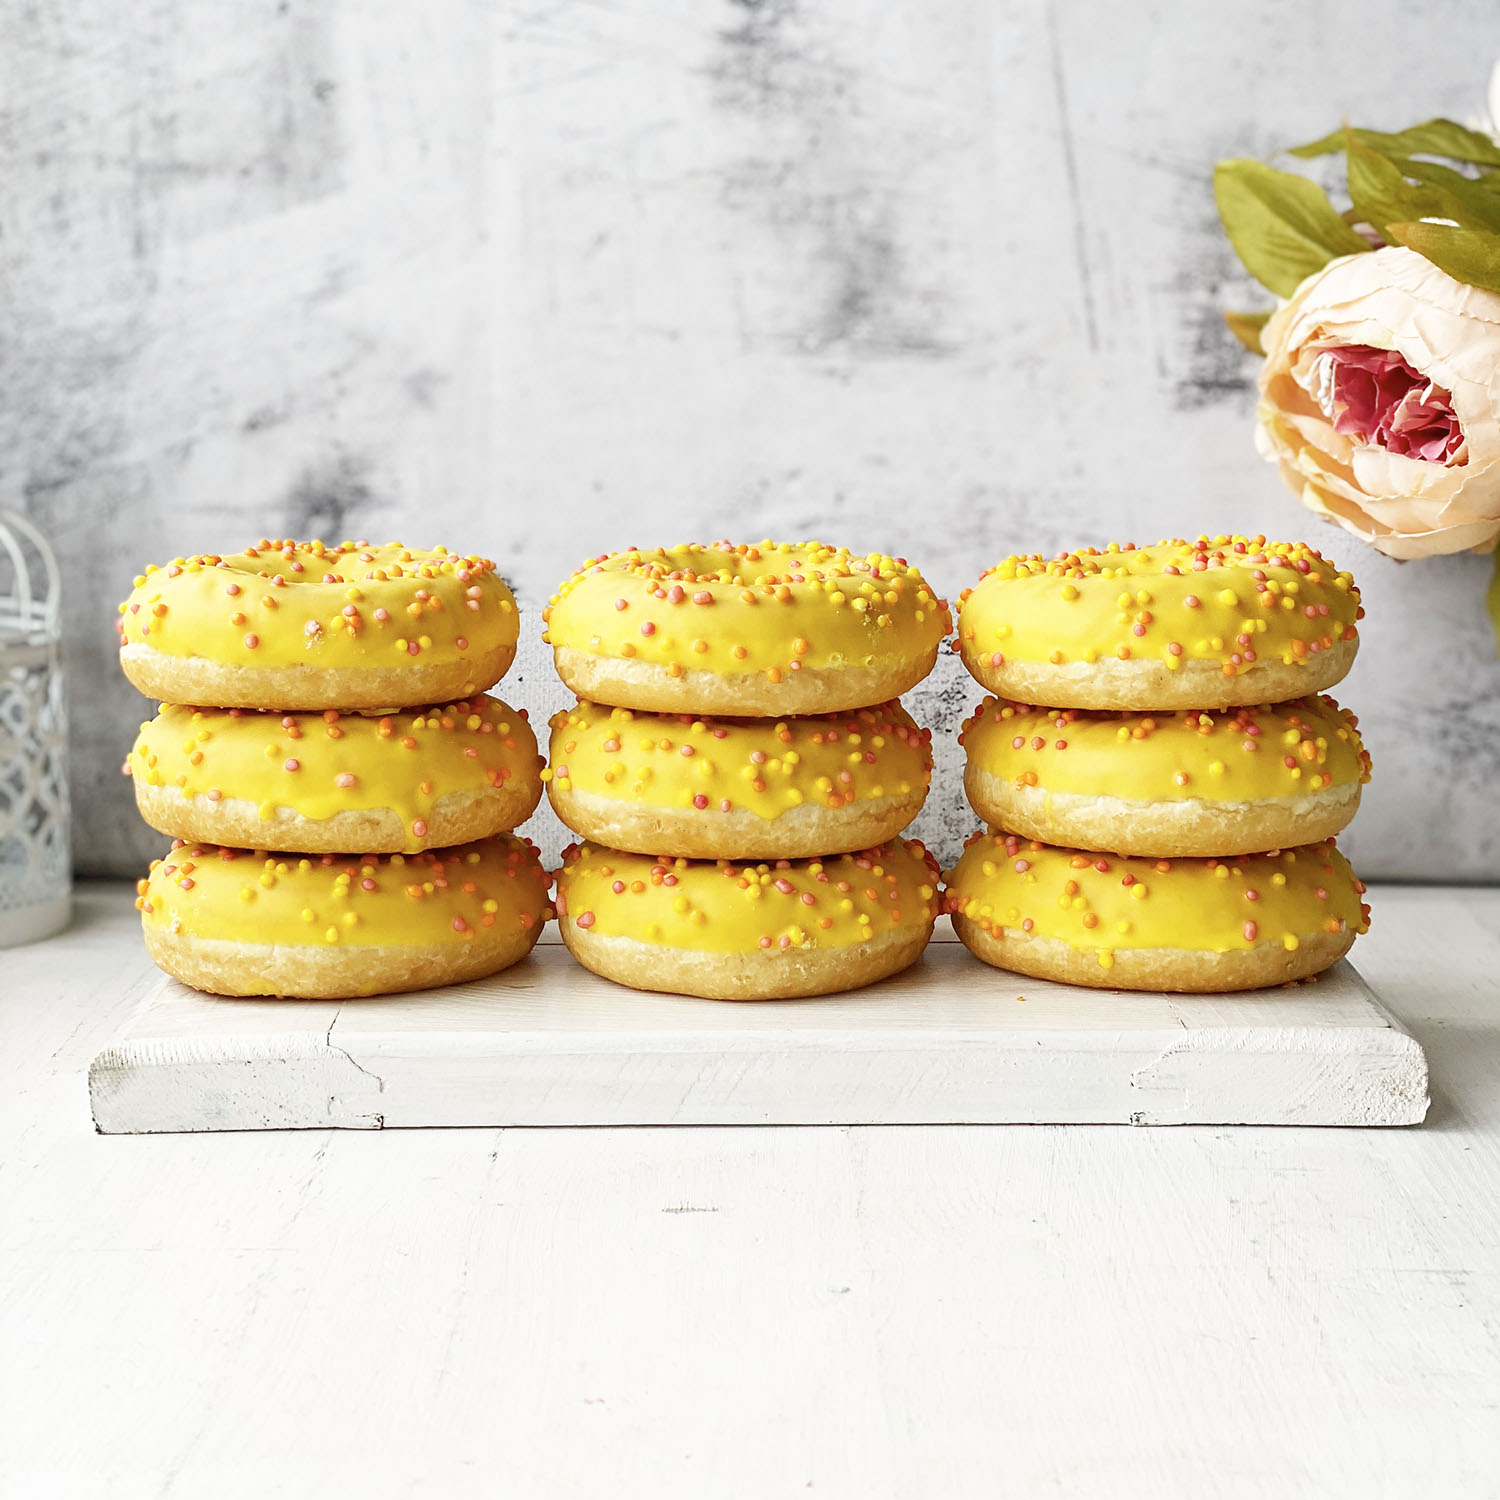 Пончик с желтой глазурью, цветной посыпкой и манговой начинкой изображение 2